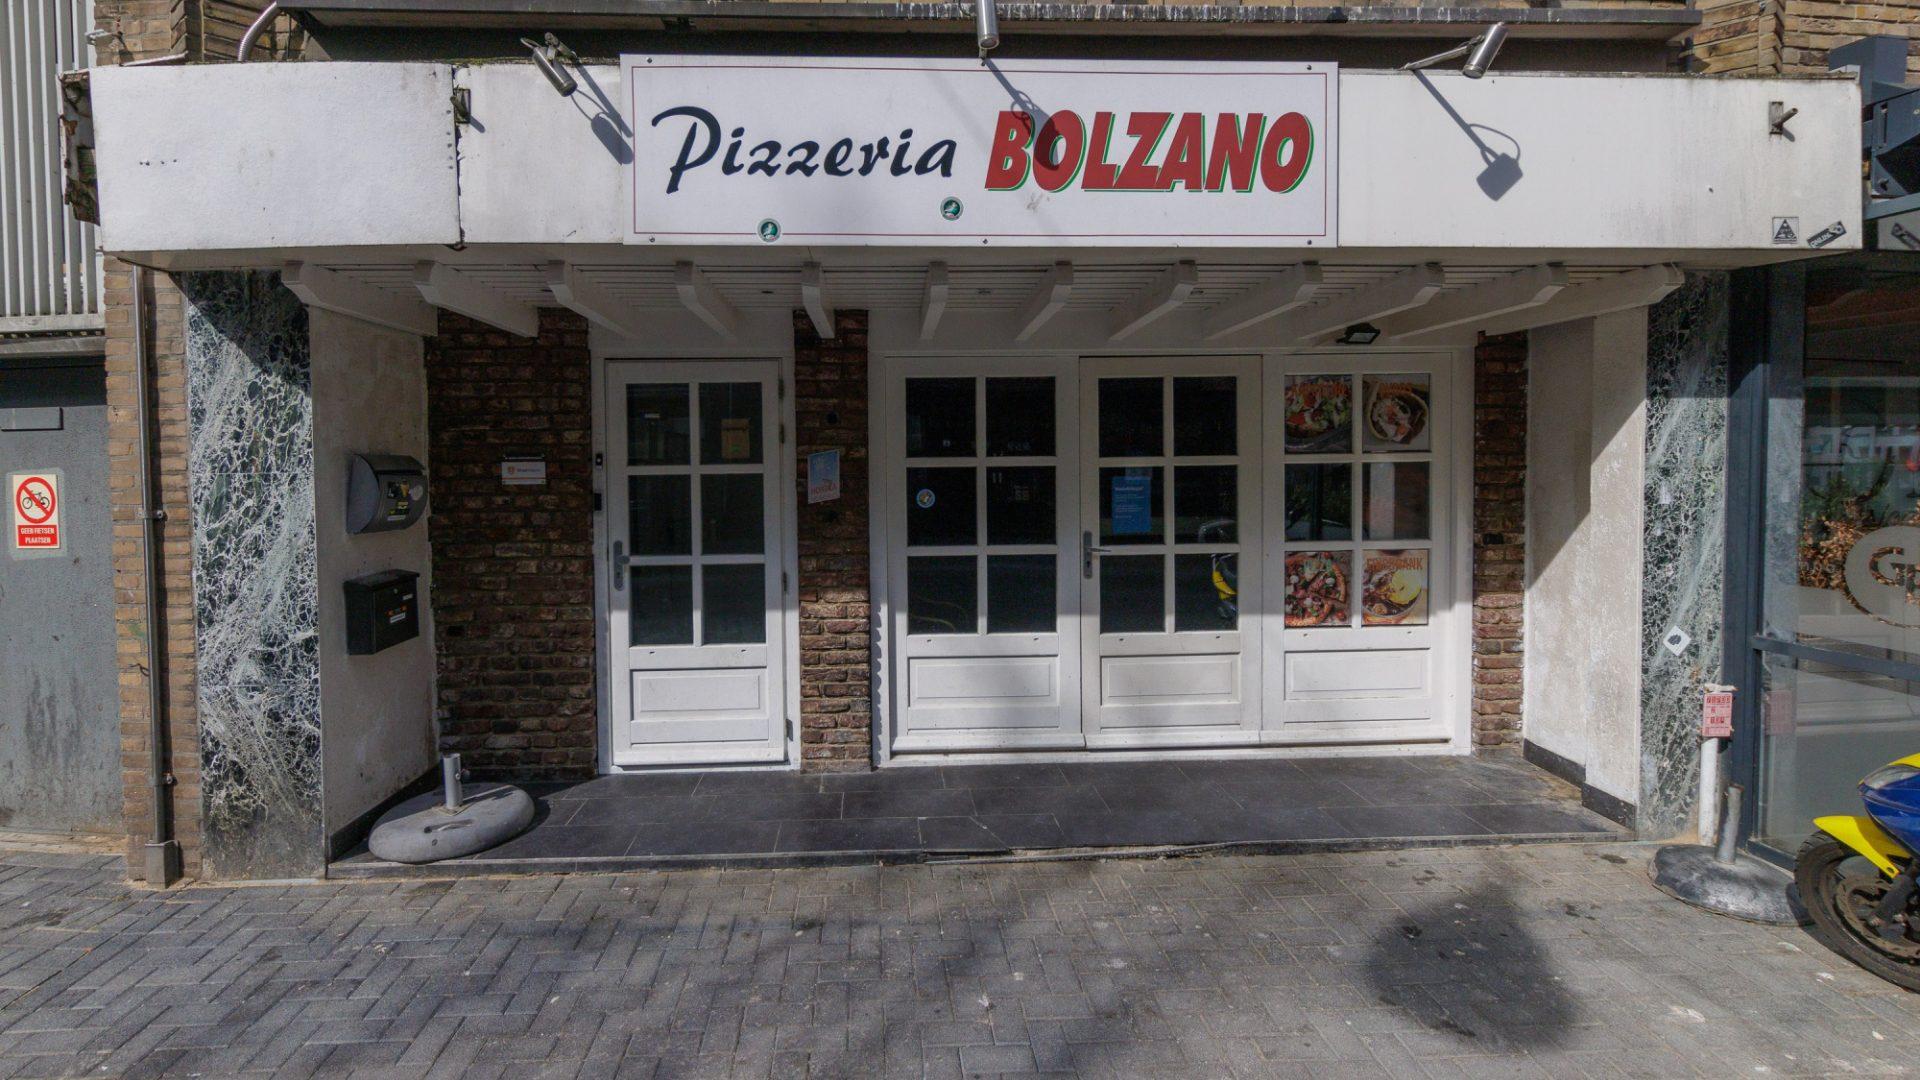 Pizzeria Bolzano (Pizzeria - Doner - Grill)